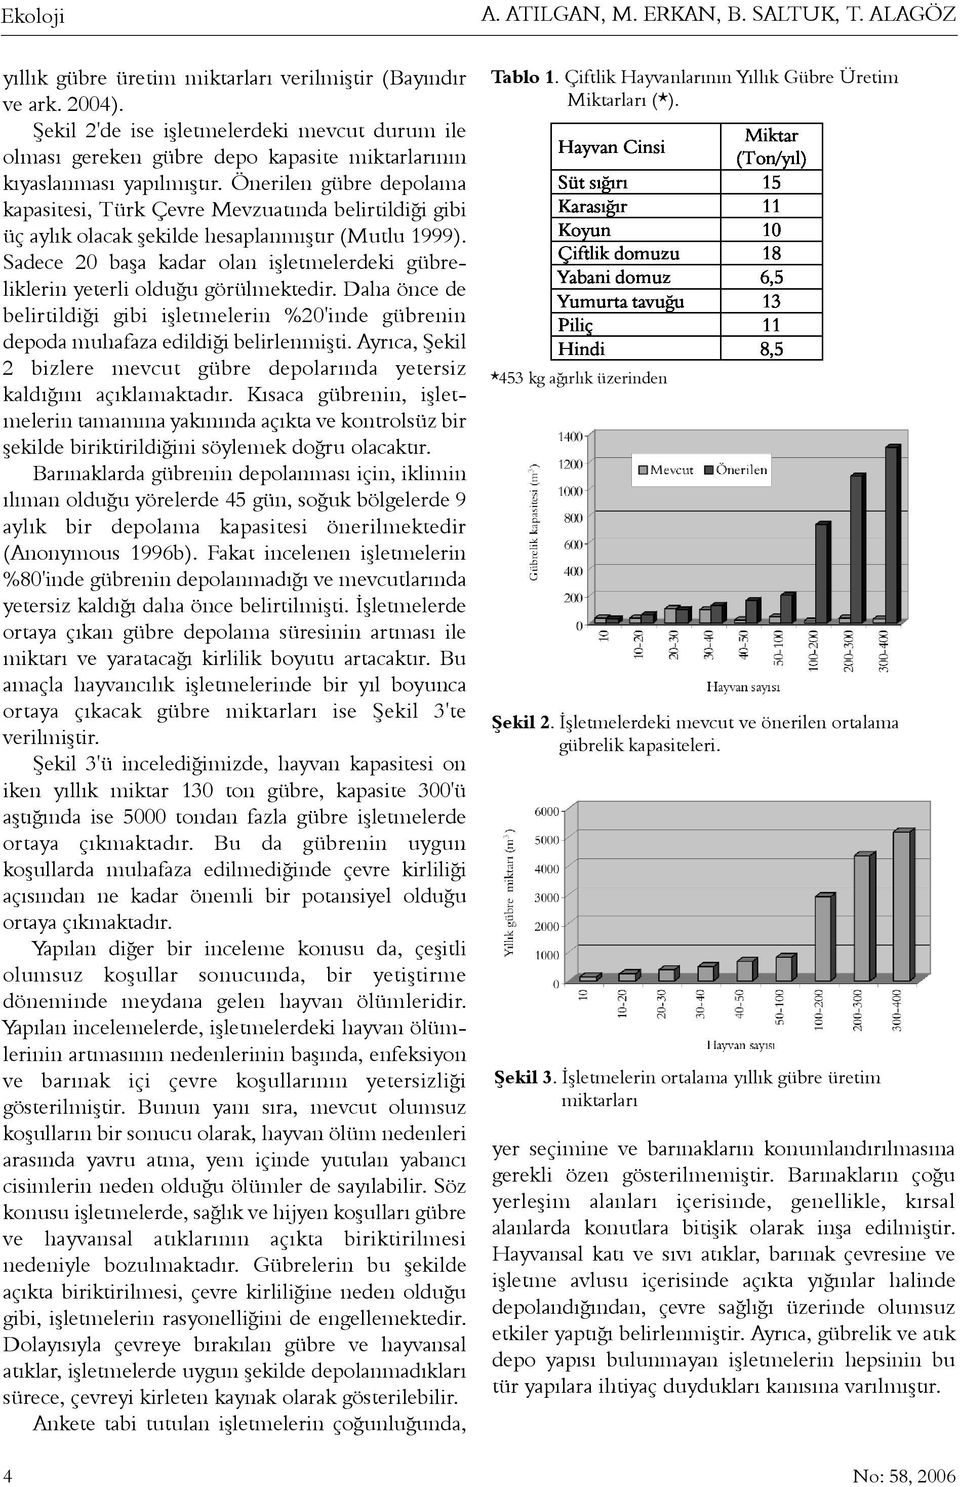 Önerilen gübre depolama kapasitesi, Türk Çevre Mevzuatýnda belirtildiði gibi üç aylýk olacak þekilde hesaplanmýþtýr (Mutlu 1999).